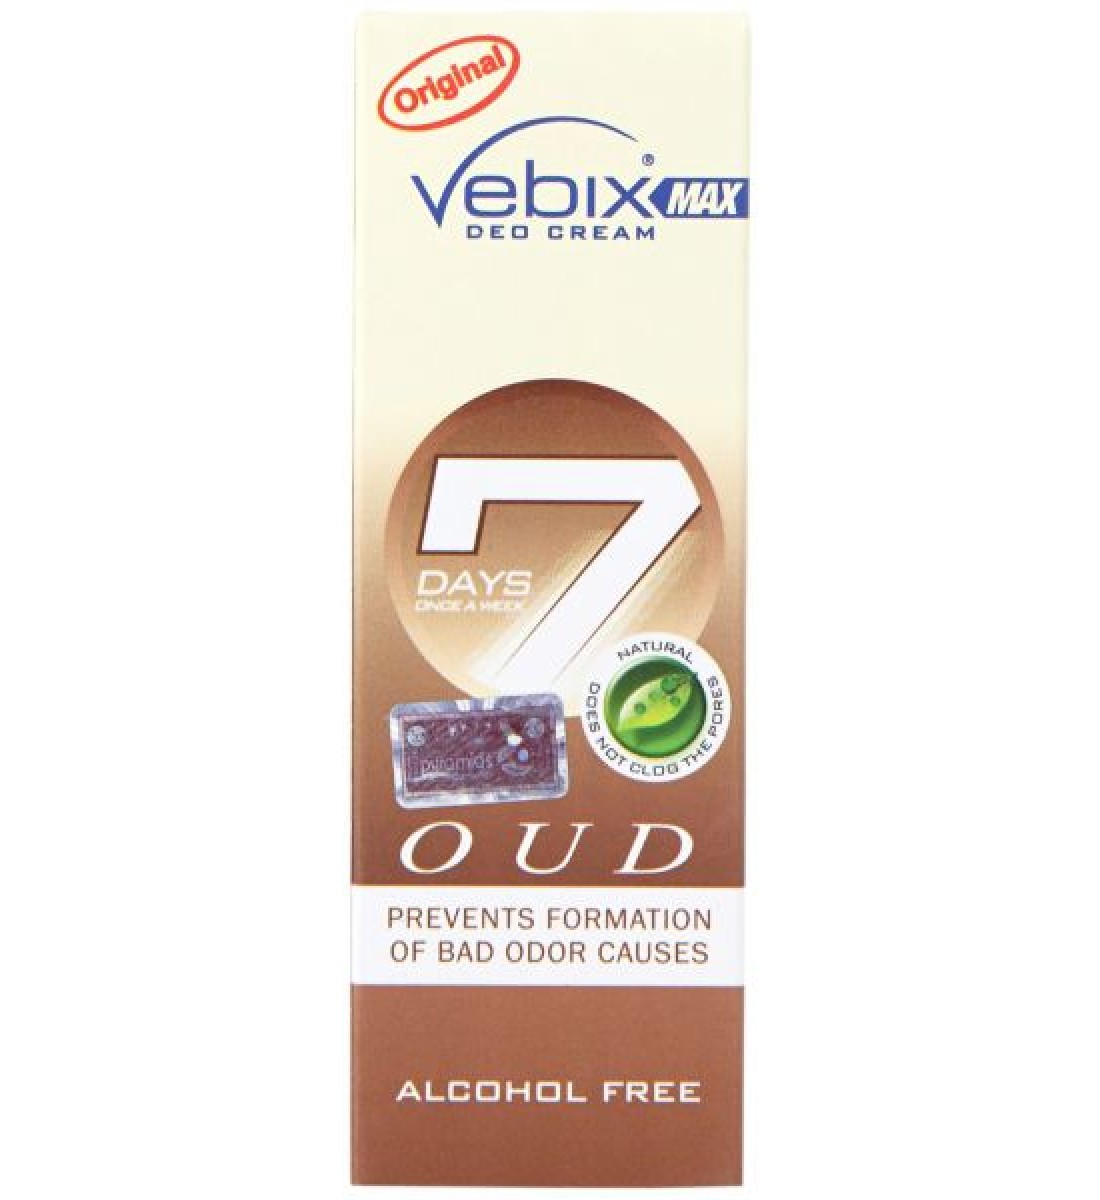 Vebix Deodorant Deo Ceam Oud for Unisex - 25 ml